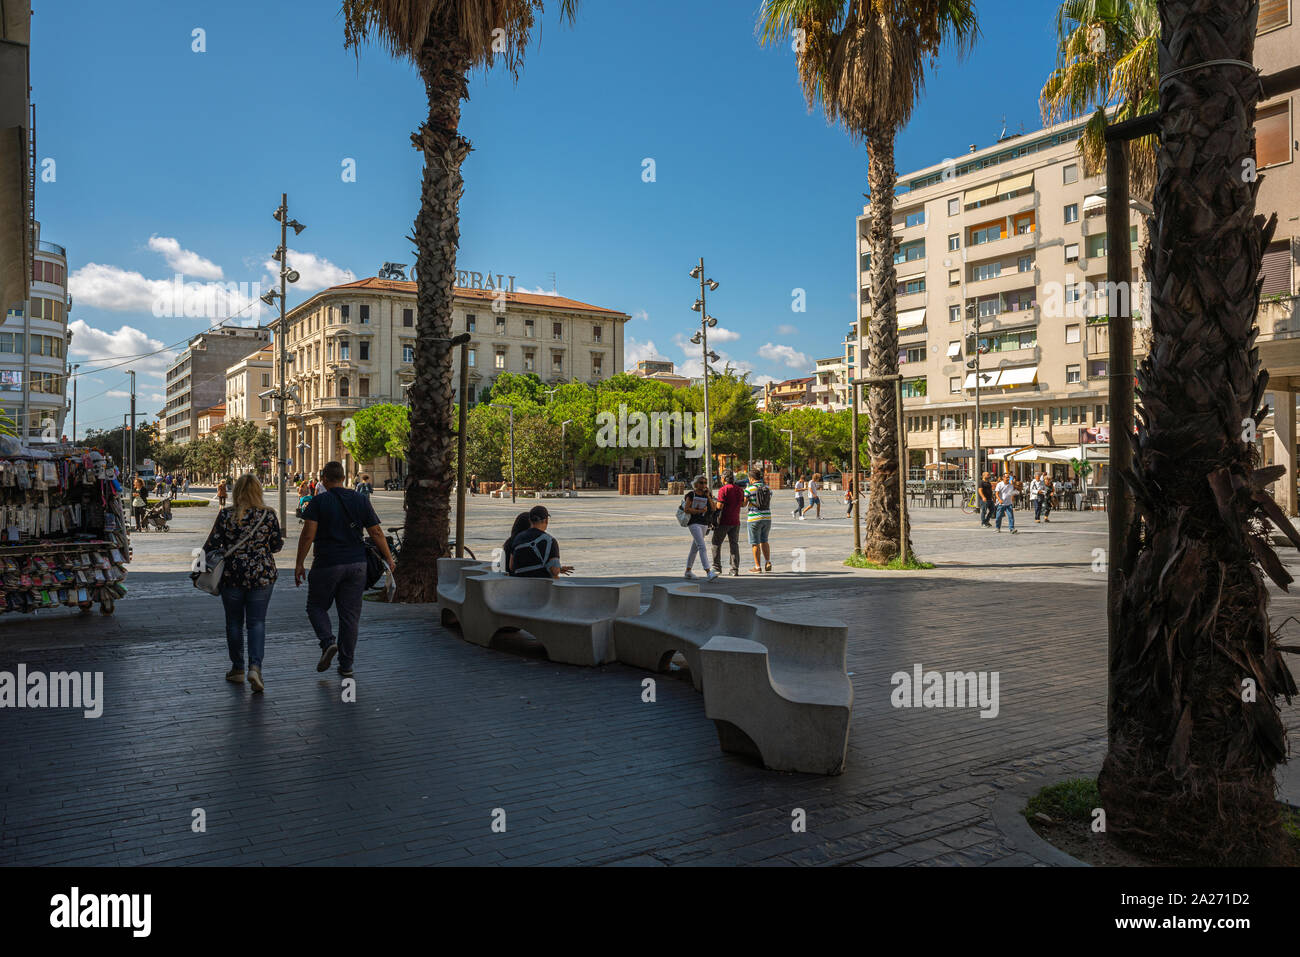 Vista de la plaza principal, Piazza Salotto situado en el centro de la ciudad de Pescara. Foto de stock